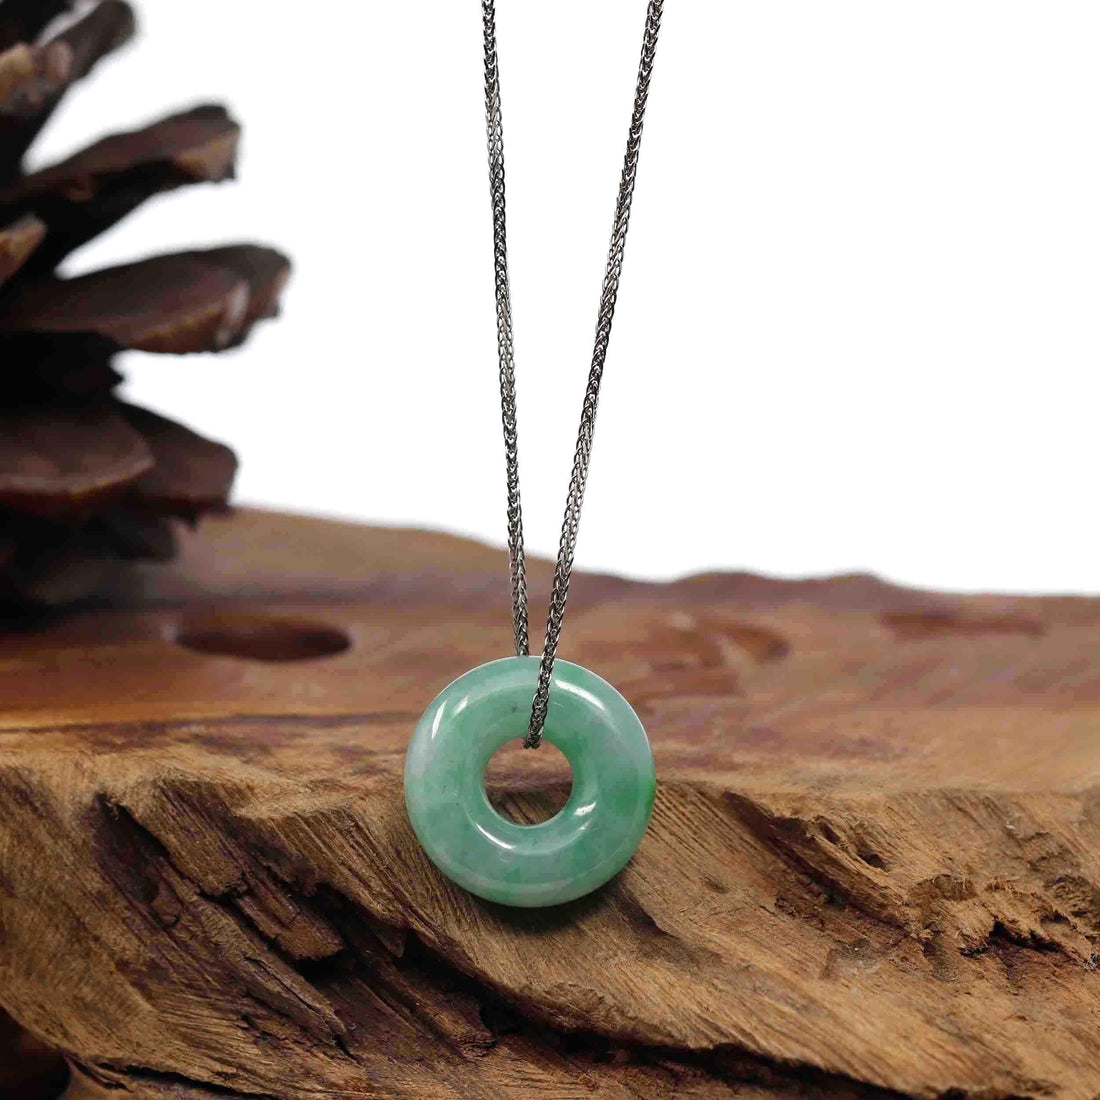 Baikalla Jewelry Jade Pendant Necklace Baikalla "Good Luck Button" Necklace Green Jadeite Jade Pendant